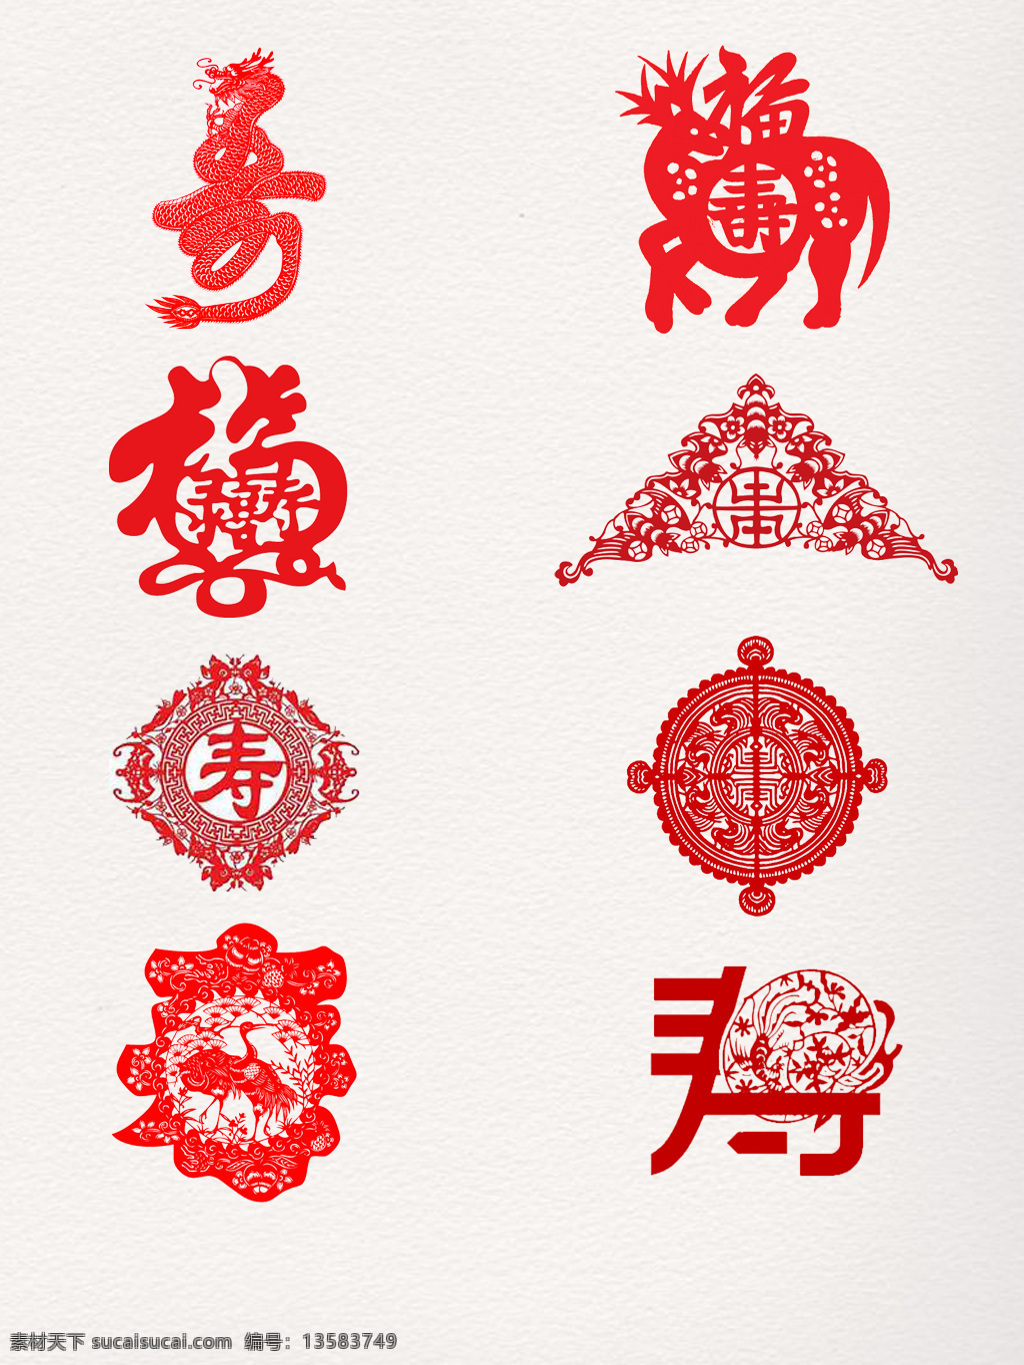 中国 风 剪纸 寿 字 传统 窗花 福字 狗年剪纸 红色 生肖 寿字 寿字剪纸 纹样 新年剪纸 中国风 装饰